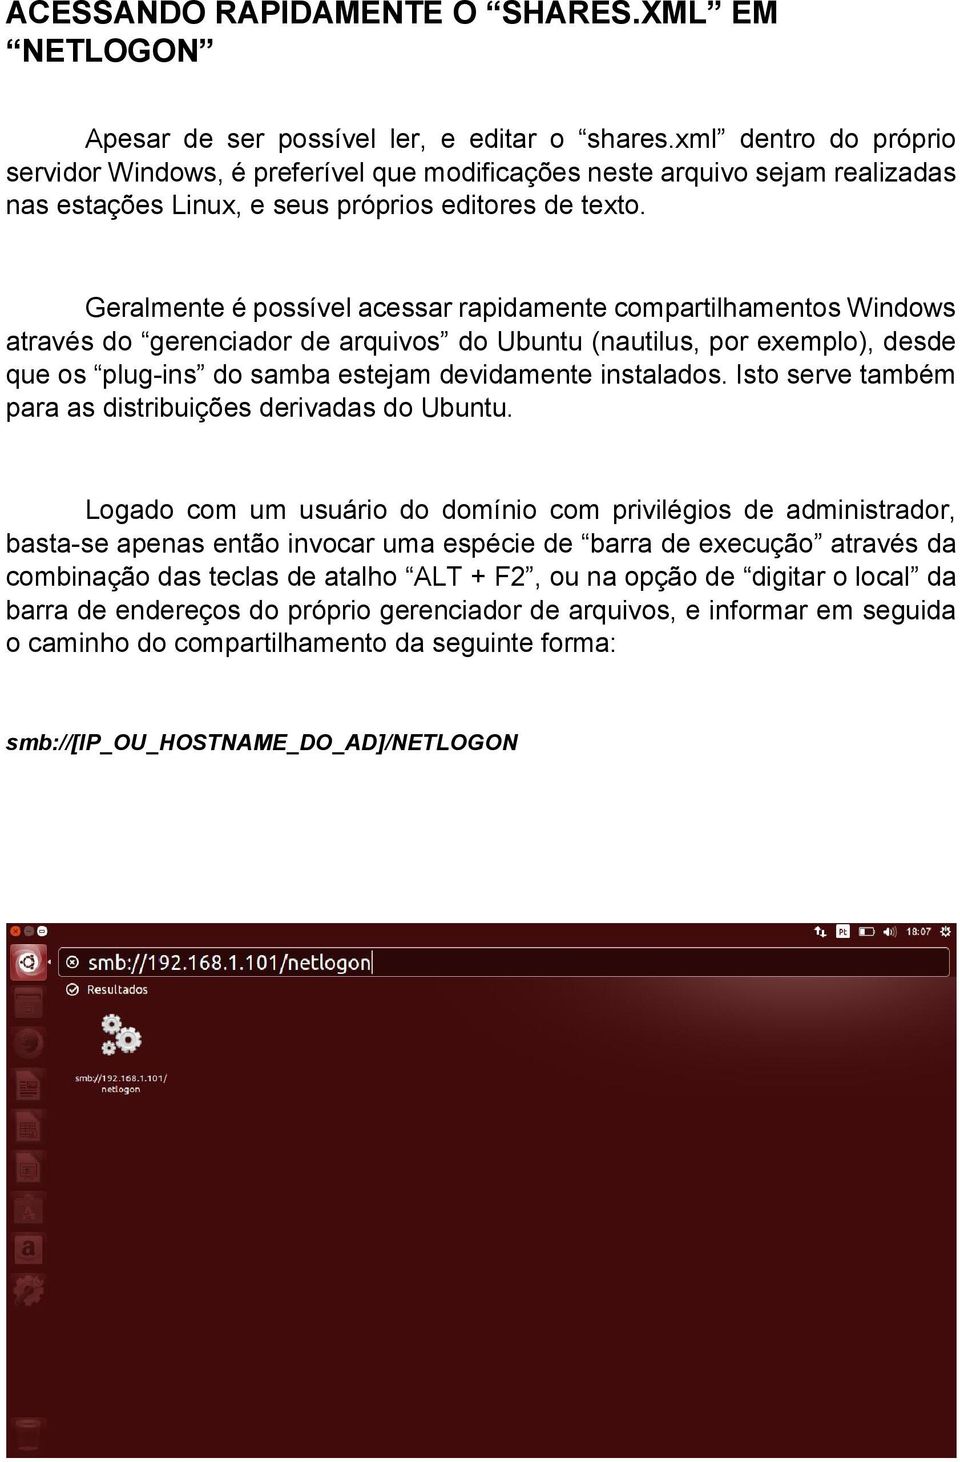 Geralmente é possível acessar rapidamente compartilhamentos Windows através do gerenciador de arquivos do Ubuntu (nautilus, por exemplo), desde que os plug-ins do samba estejam devidamente instalados.